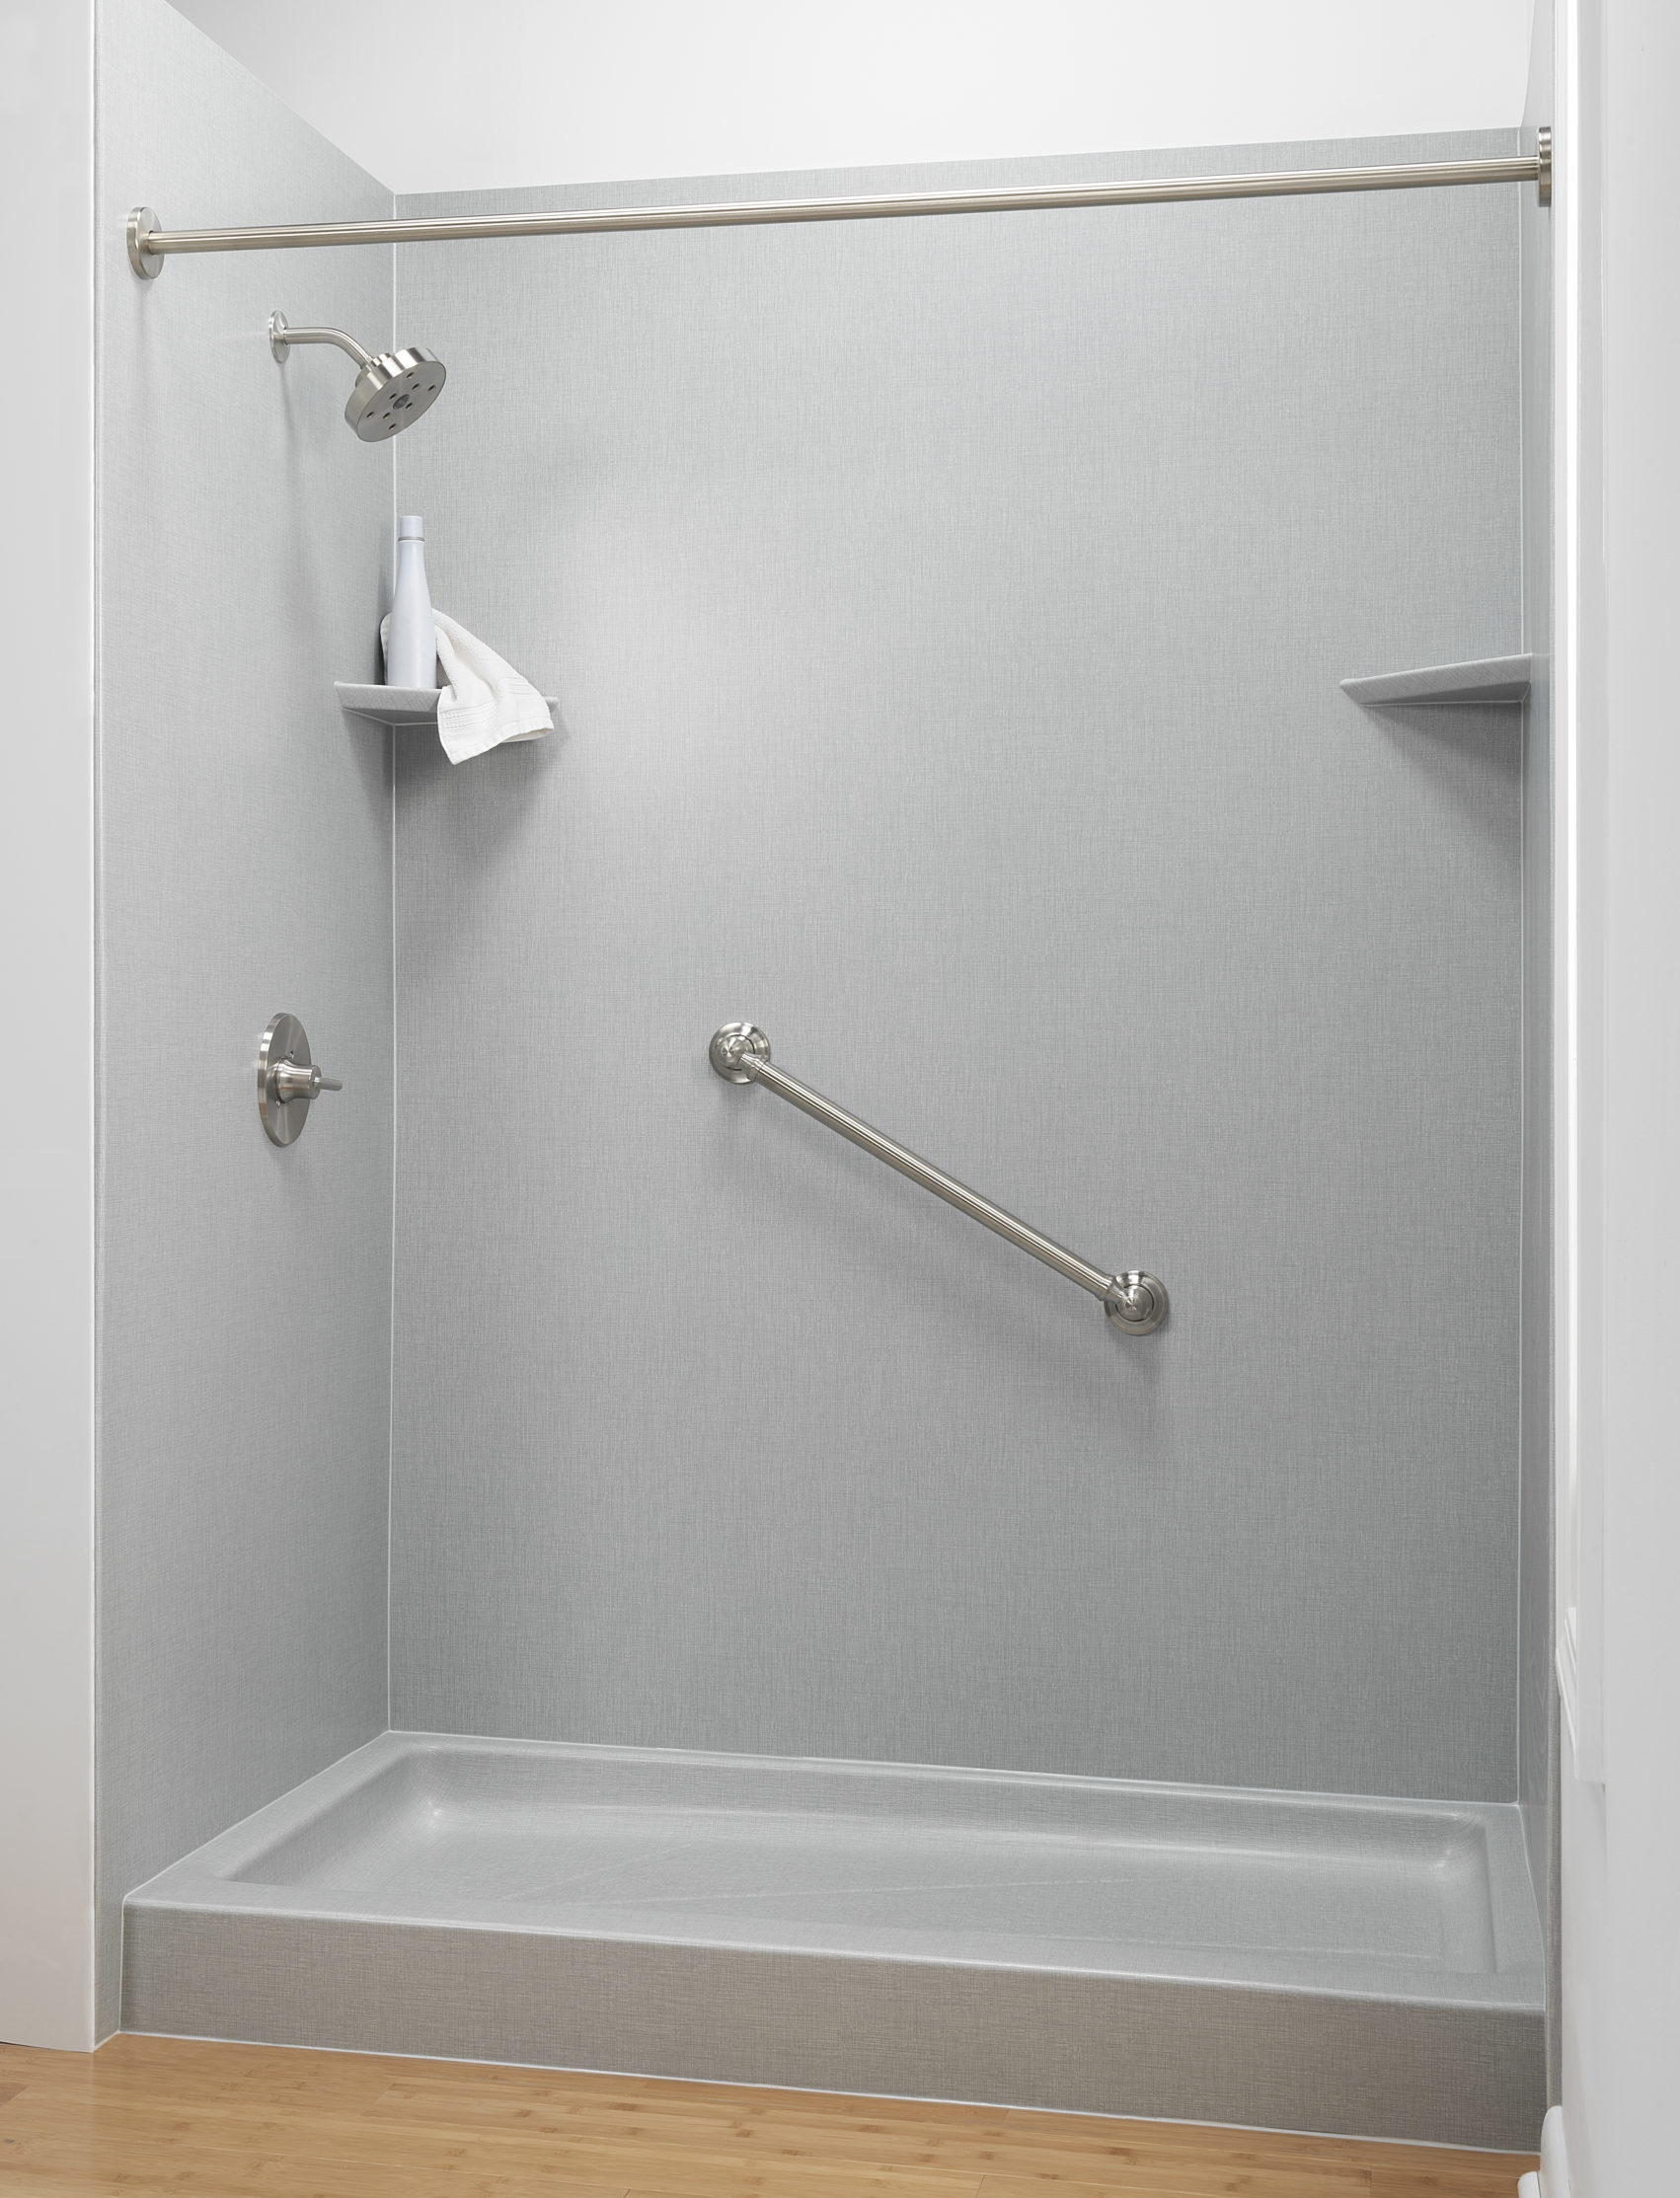 42+ Bathroom remodeling contractor utica ny information